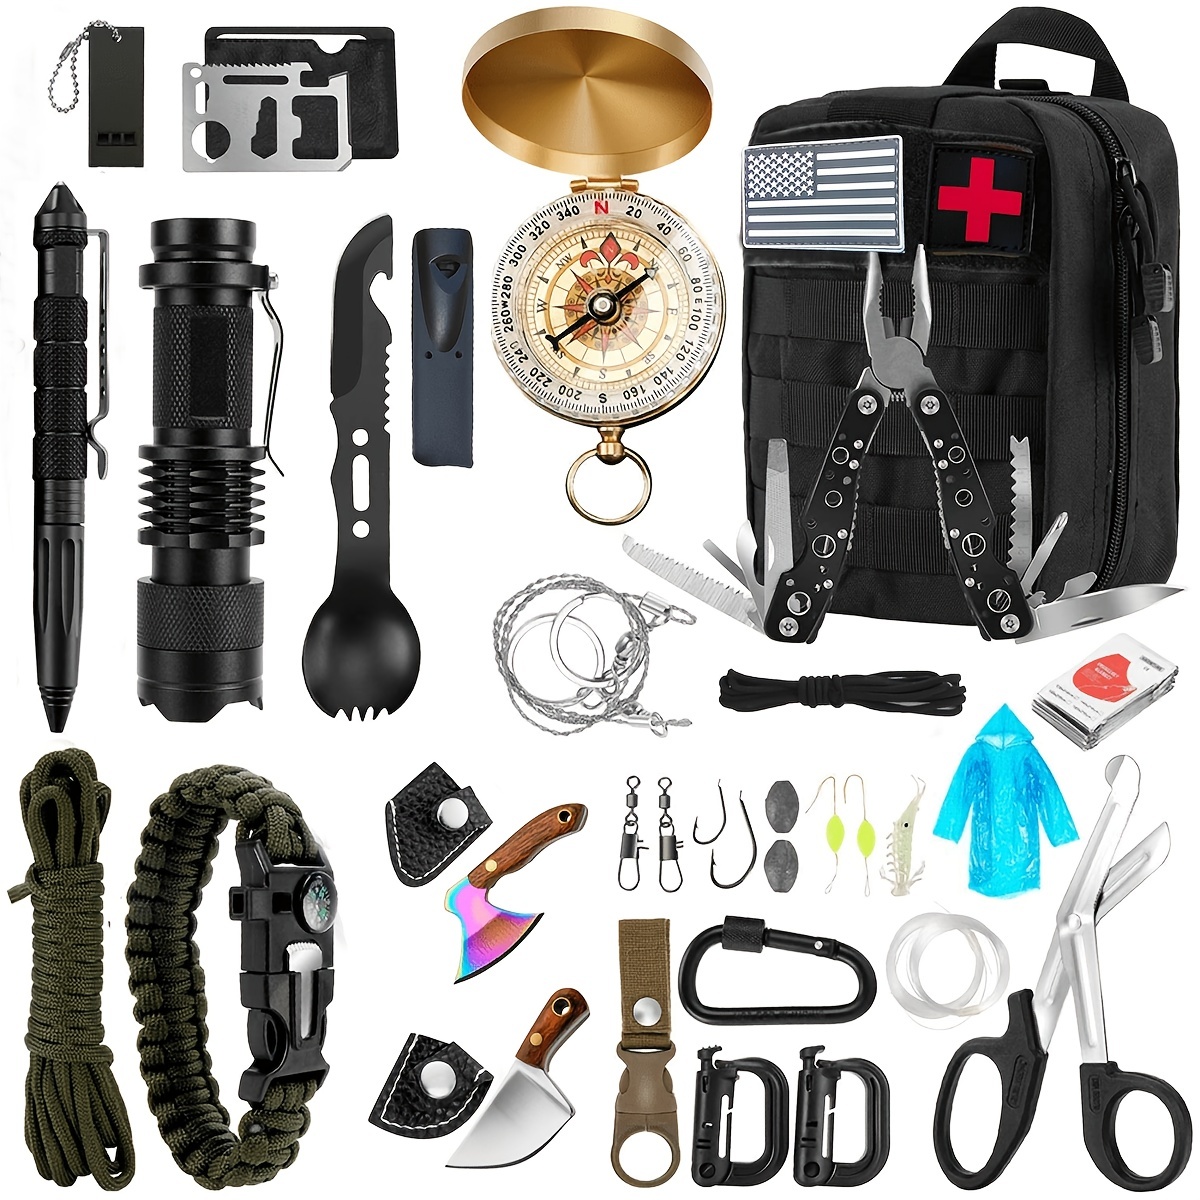 10-in-1 Emergency Survival Gear Kit